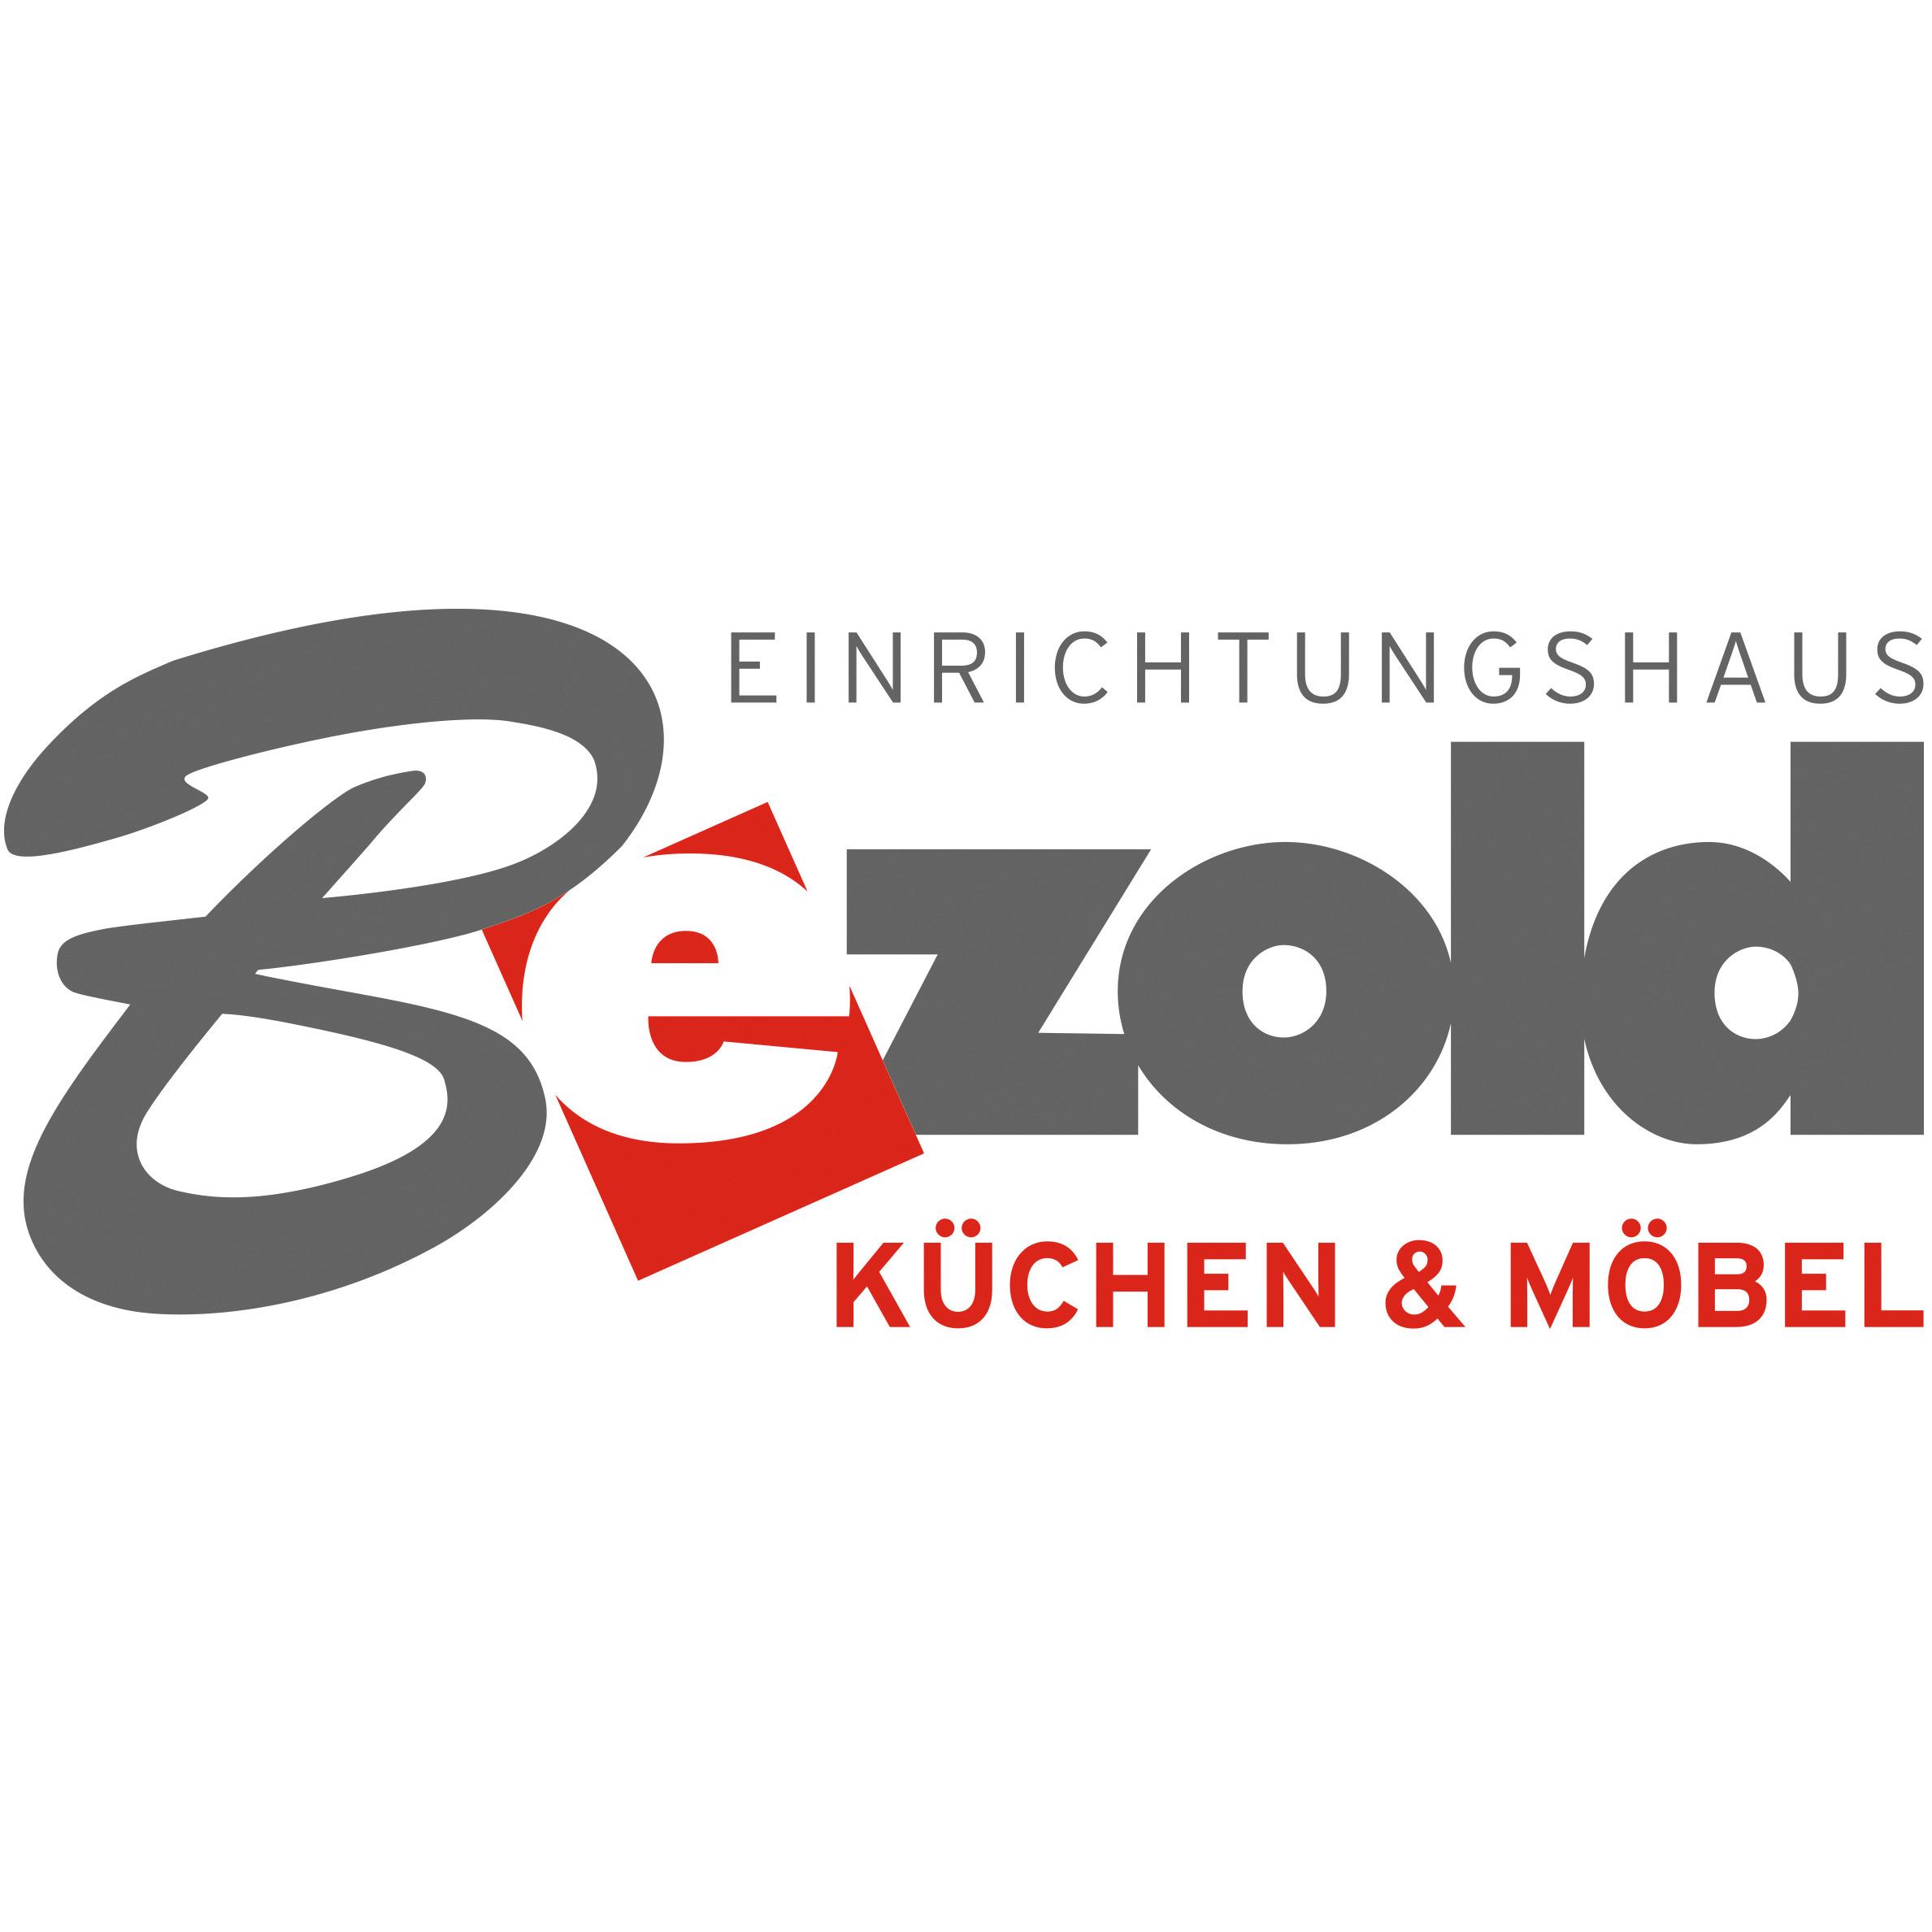 Einrichtungshaus Bezold GmbH & Co. KG Küchen und Möbel in Neunkirchen am Sand - Logo